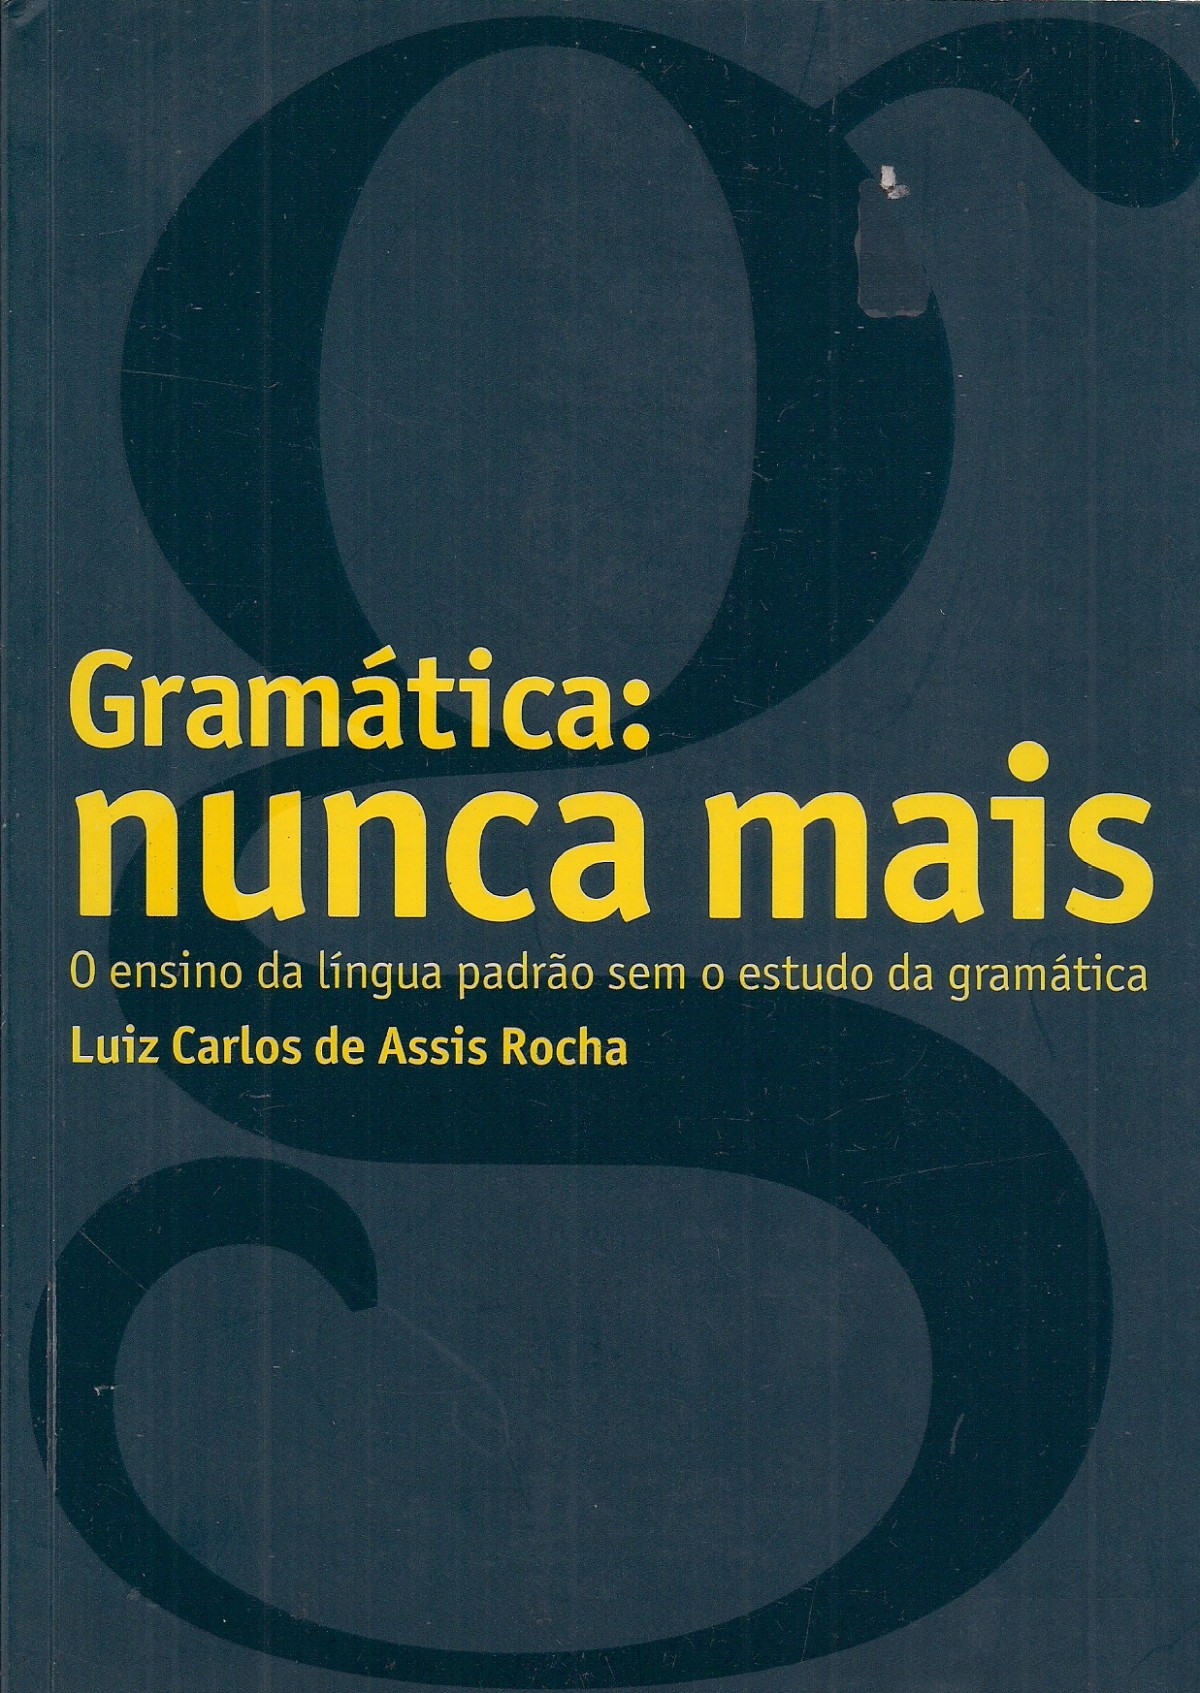 Foto 1 - Gramática: nunca mais - O ensino da língua padrão sem o estudo da gramática